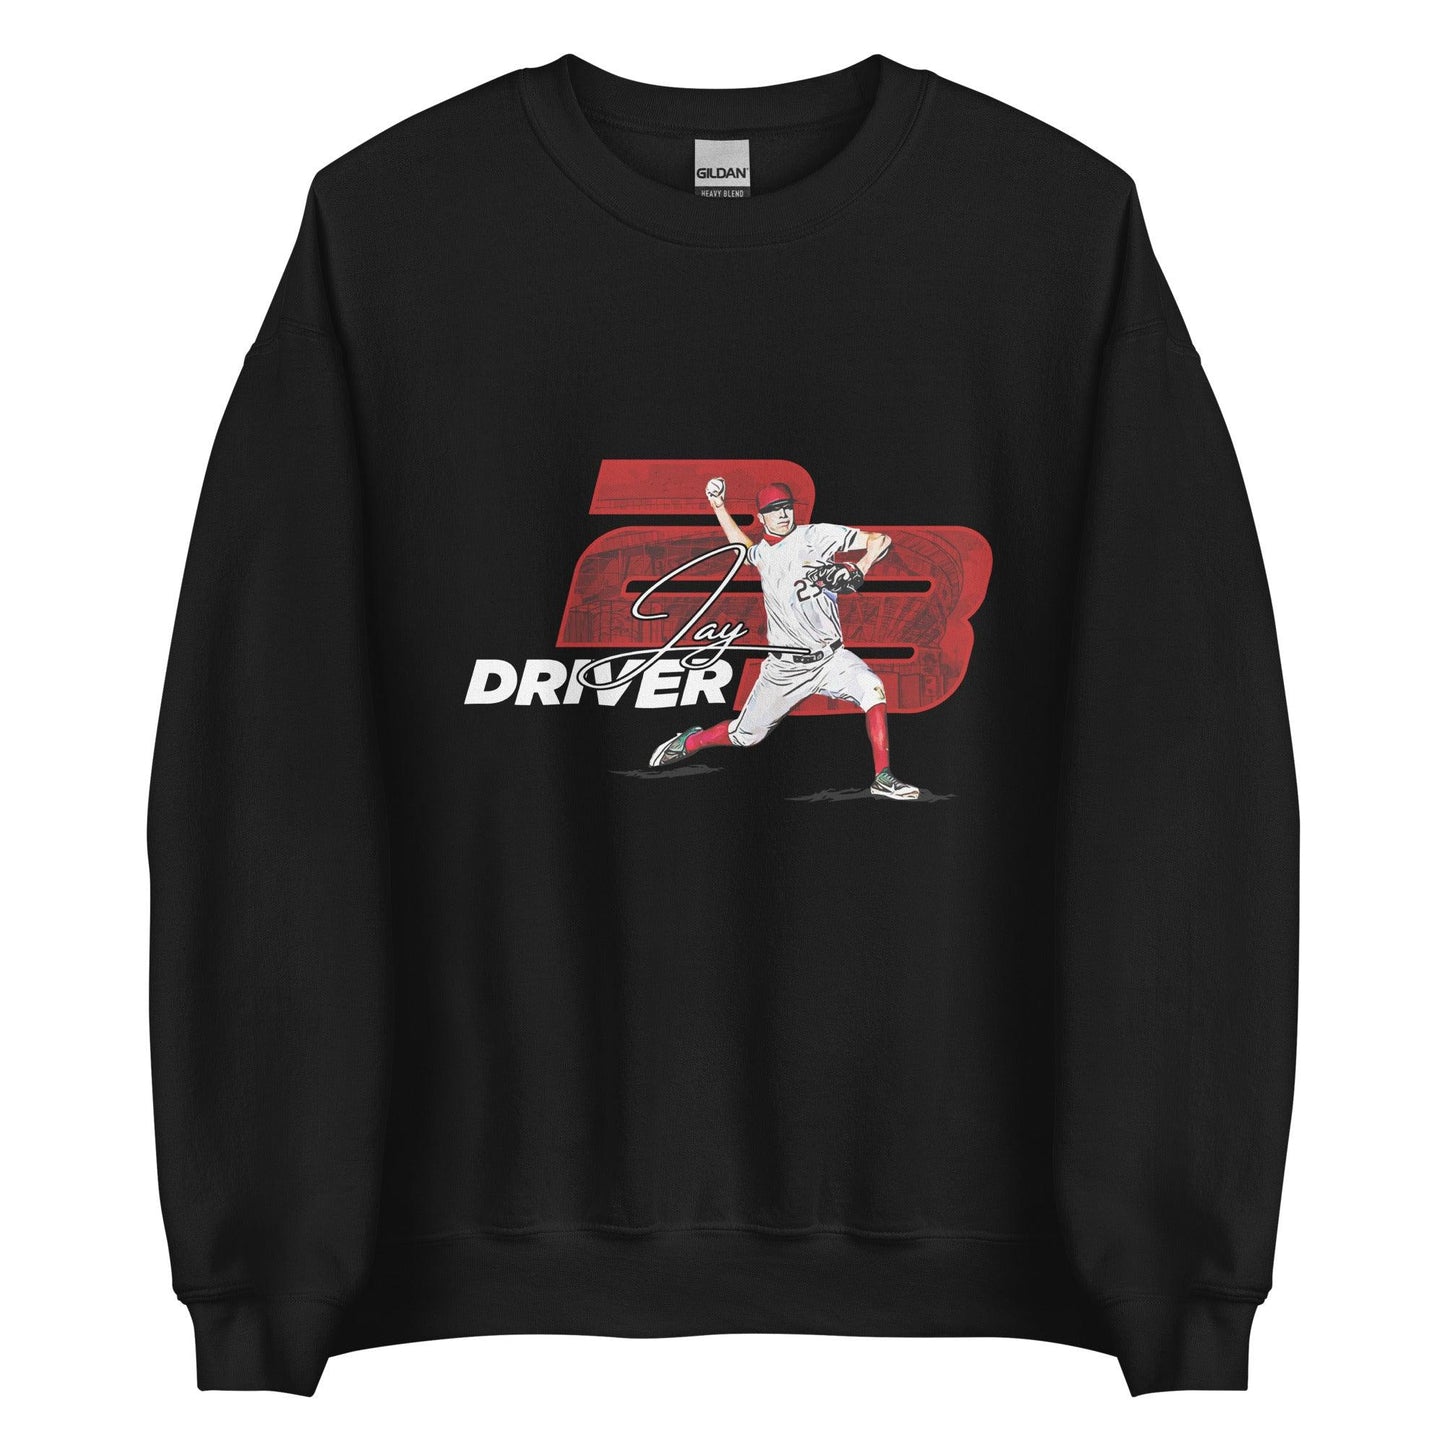 Jay Driver “Essential” Sweatshirt - Fan Arch